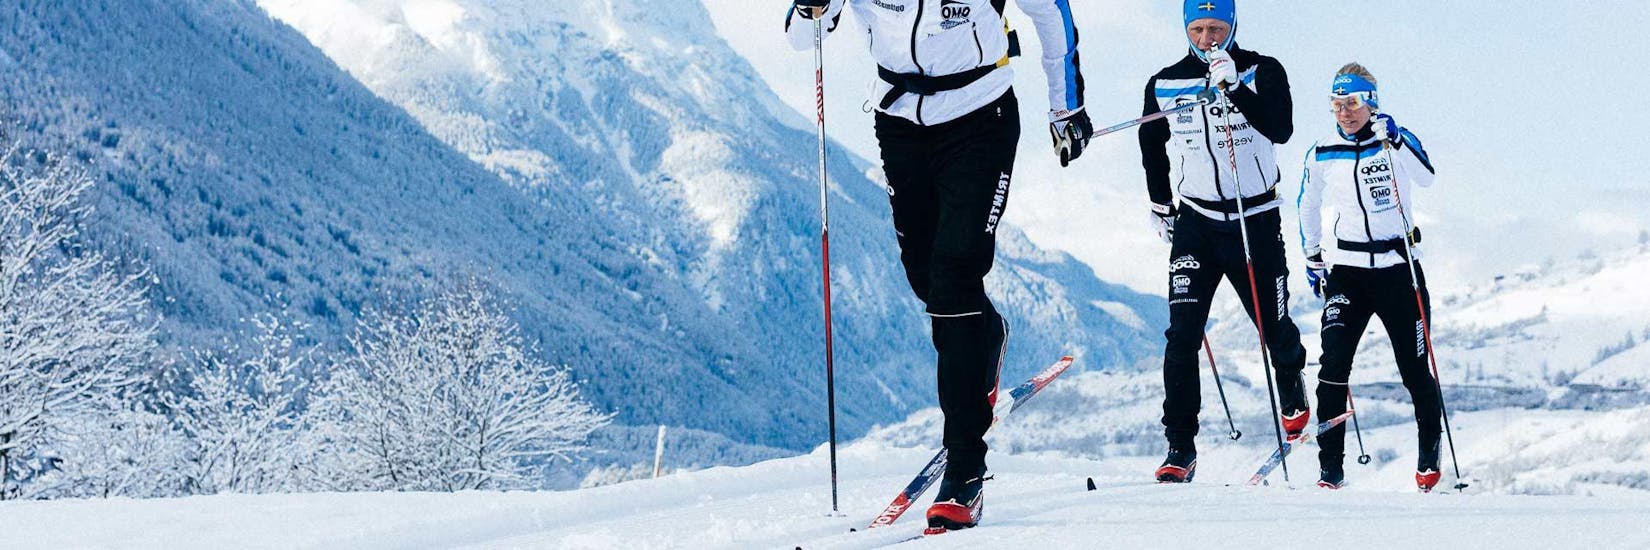 Gemeinsam mit unseren NTC Langlauflehrern entdeckst Du die abwechslungsreichen Loipen rund um die Wintersportregion Oberstdorf.